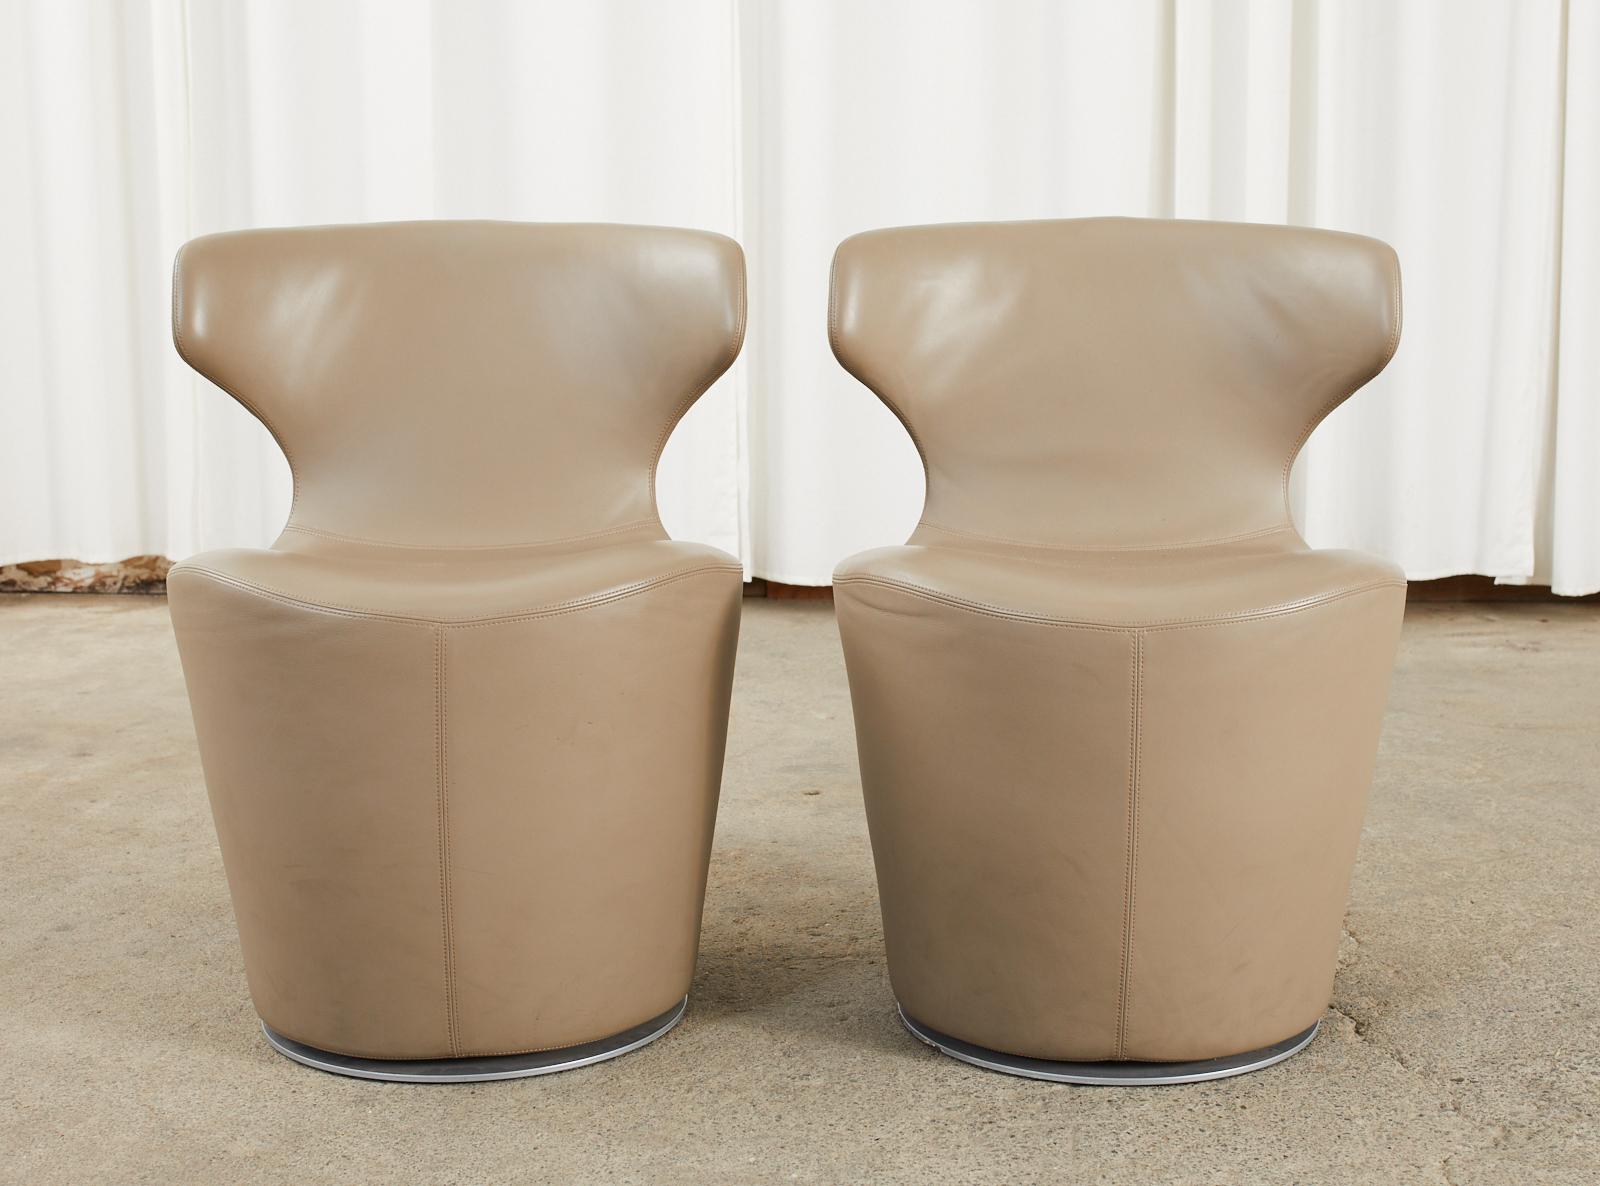 Elegantes Paar Mini-Papilio-Stühle aus Leder, entworfen von Naoto Fukusawa für B & B Italia. Erstaunliche Drehstühle mit einem Stahlrahmen, der mit feinem italienischem Leder in einem Austernton bezogen ist, und einem Drehfuß aus Stahl. Ikonischer